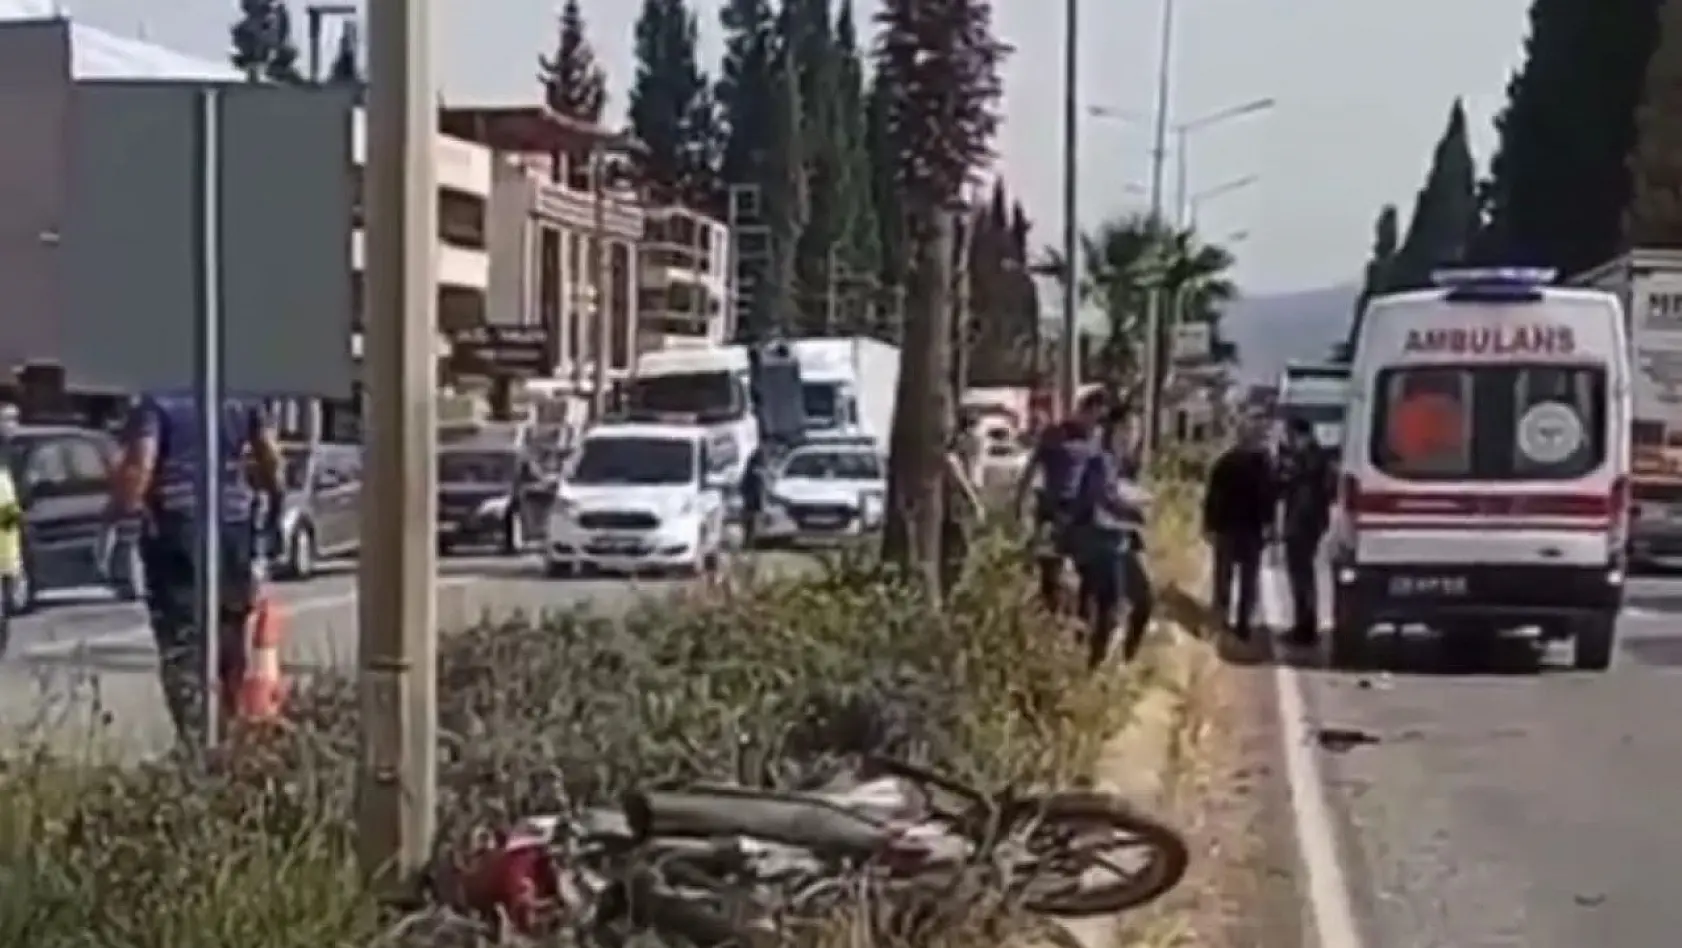 İzmir'de aracın çarptığı motosikletteki çift hayatını kaybetti